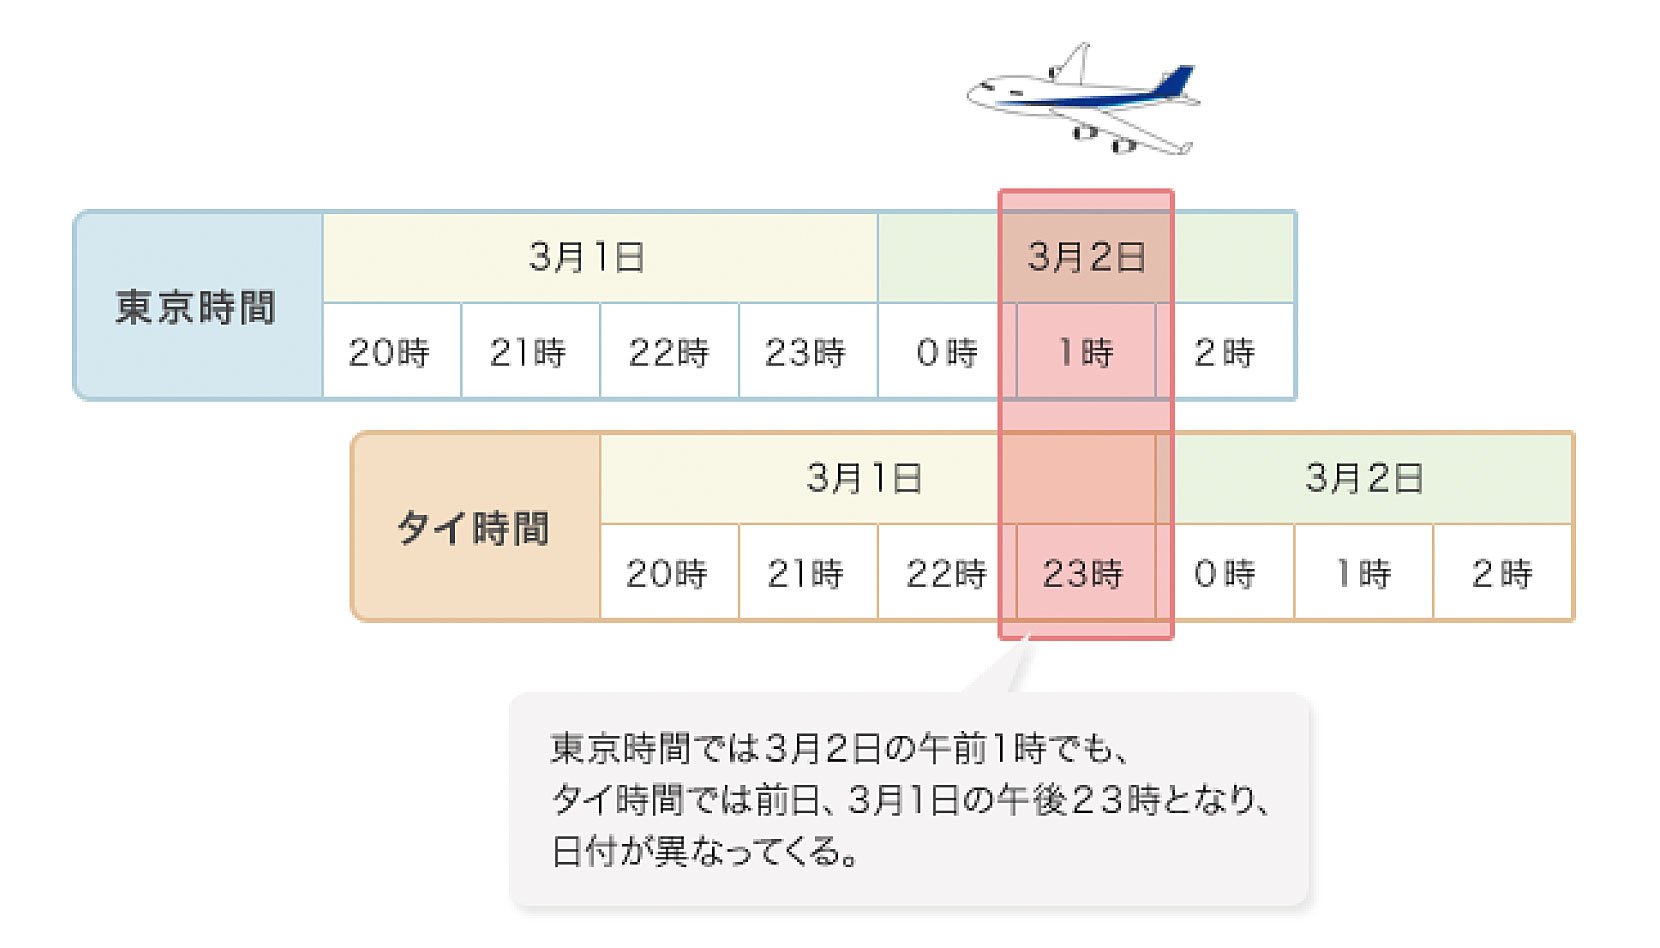 東京時間では3月2日の午前1時でも、タイ時間では前日、3月1日の午後23時となり、日付が異なってくる